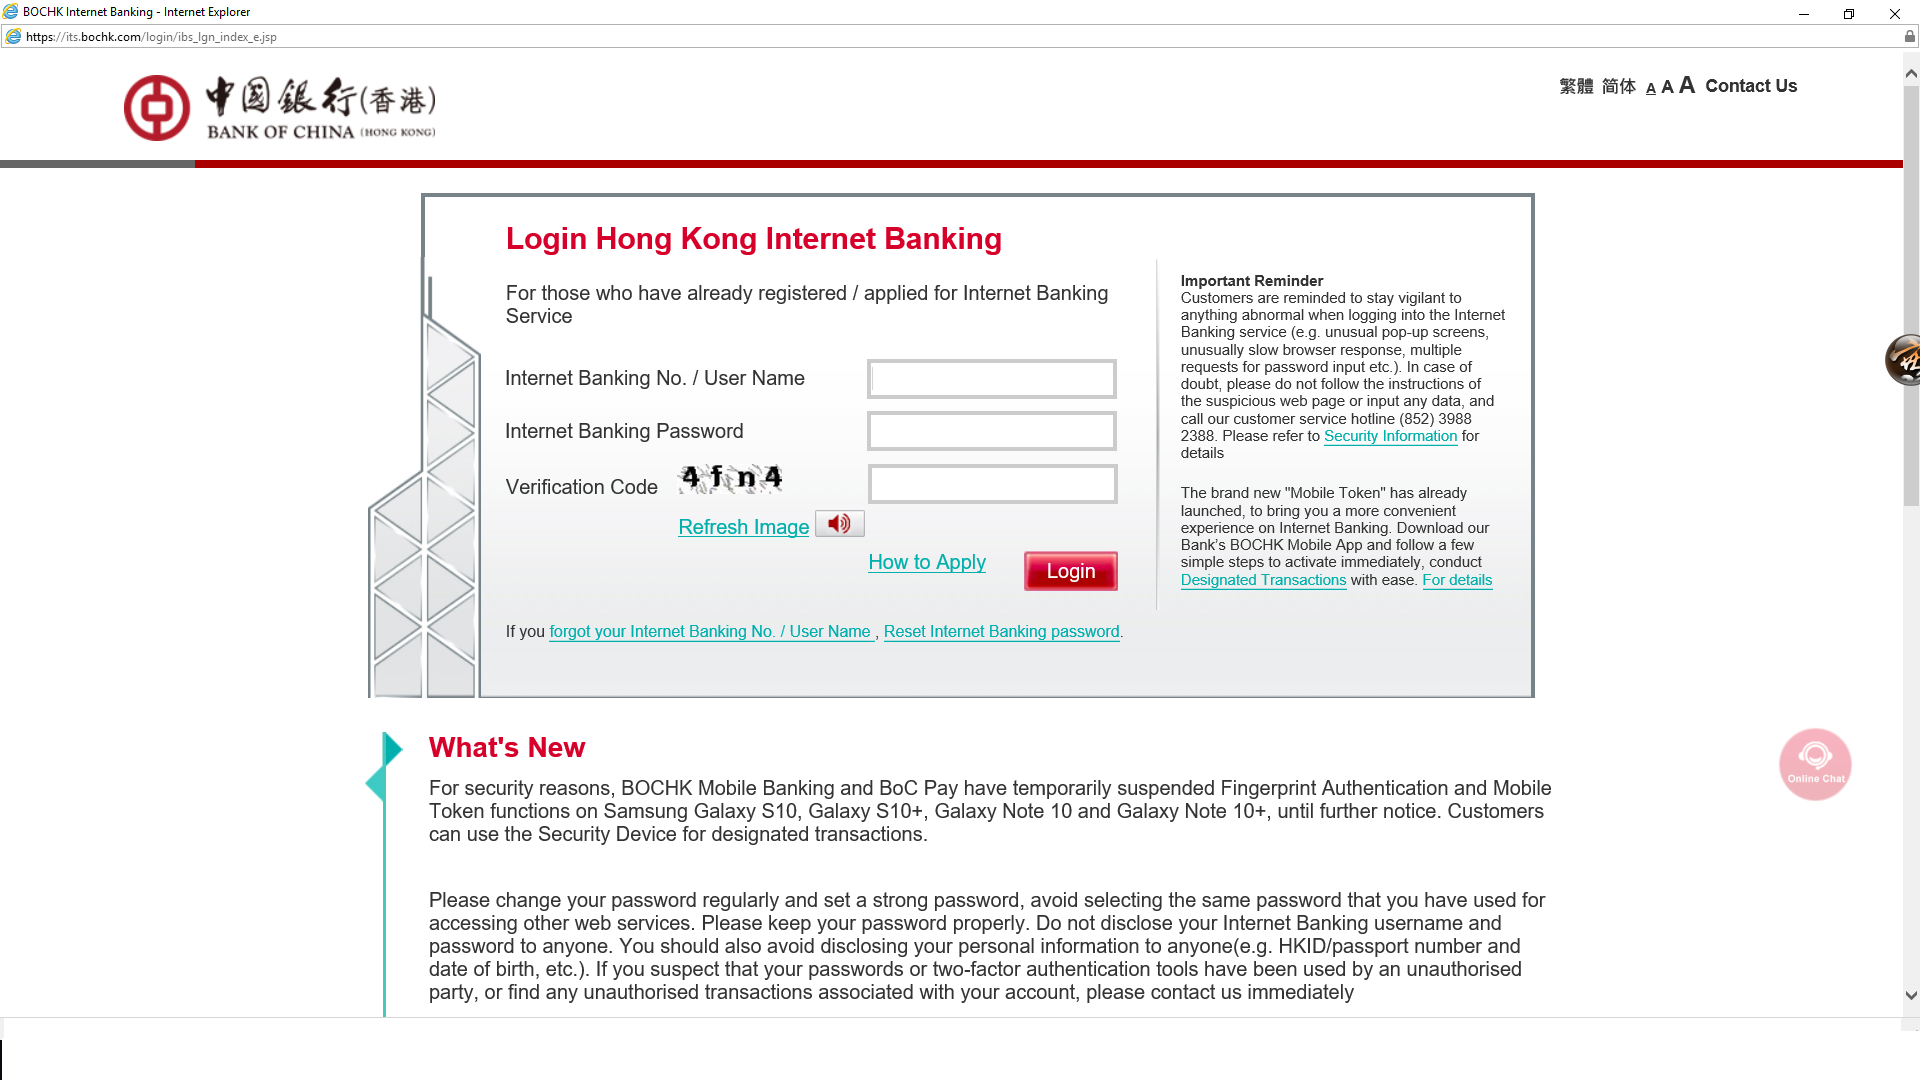 Paying Premium Via Bank Of China Hong Kong Internet Banking | Free ...